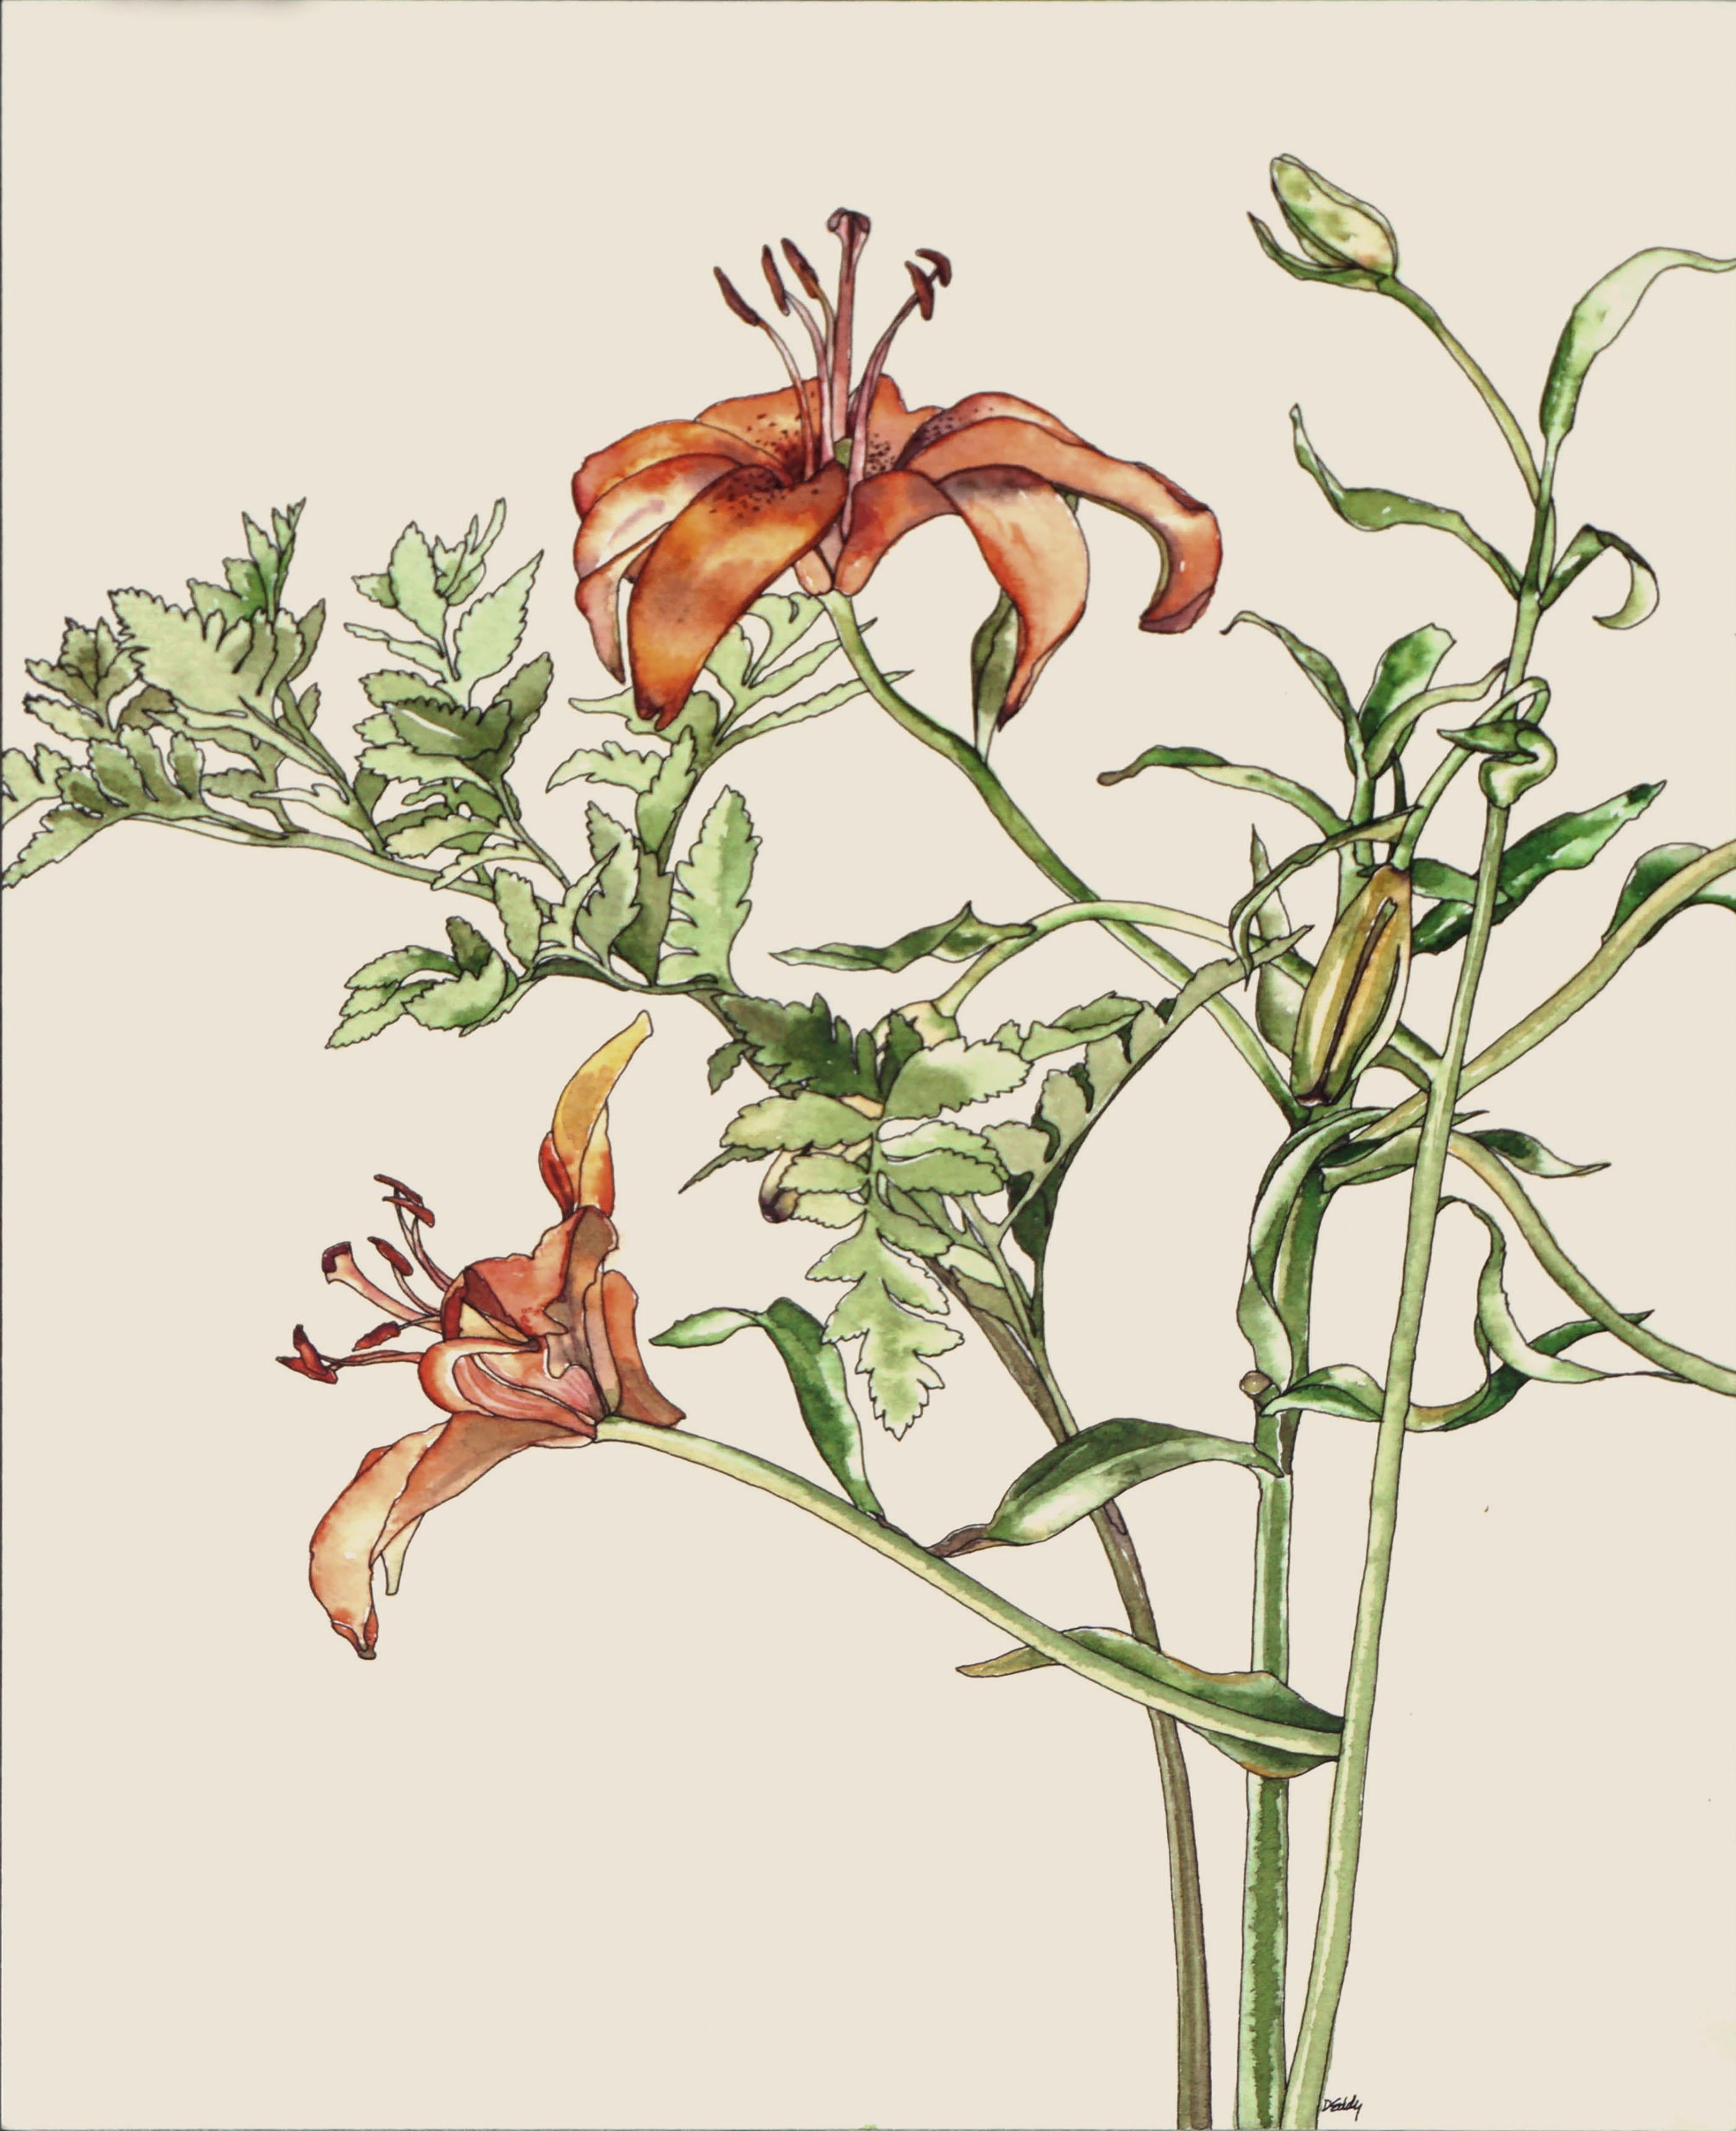 Tigerlilie – botanische Studie  – Art von Deborah Eddy